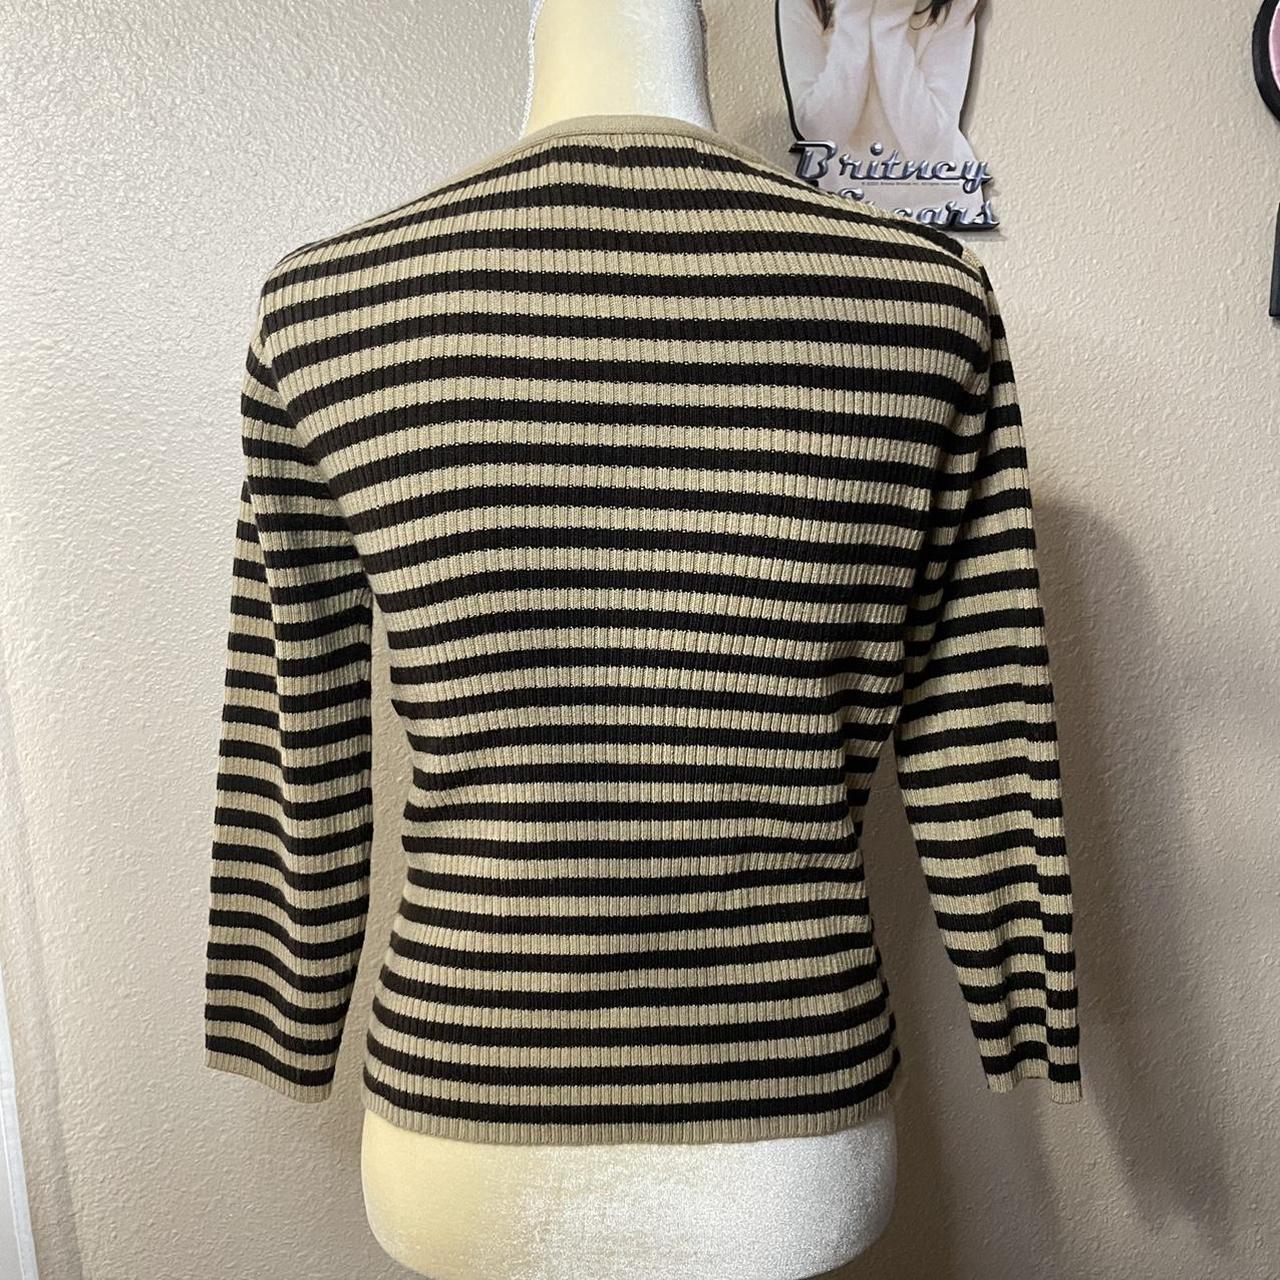 striped 2000s sweater super cute sweater, perfect... - Depop